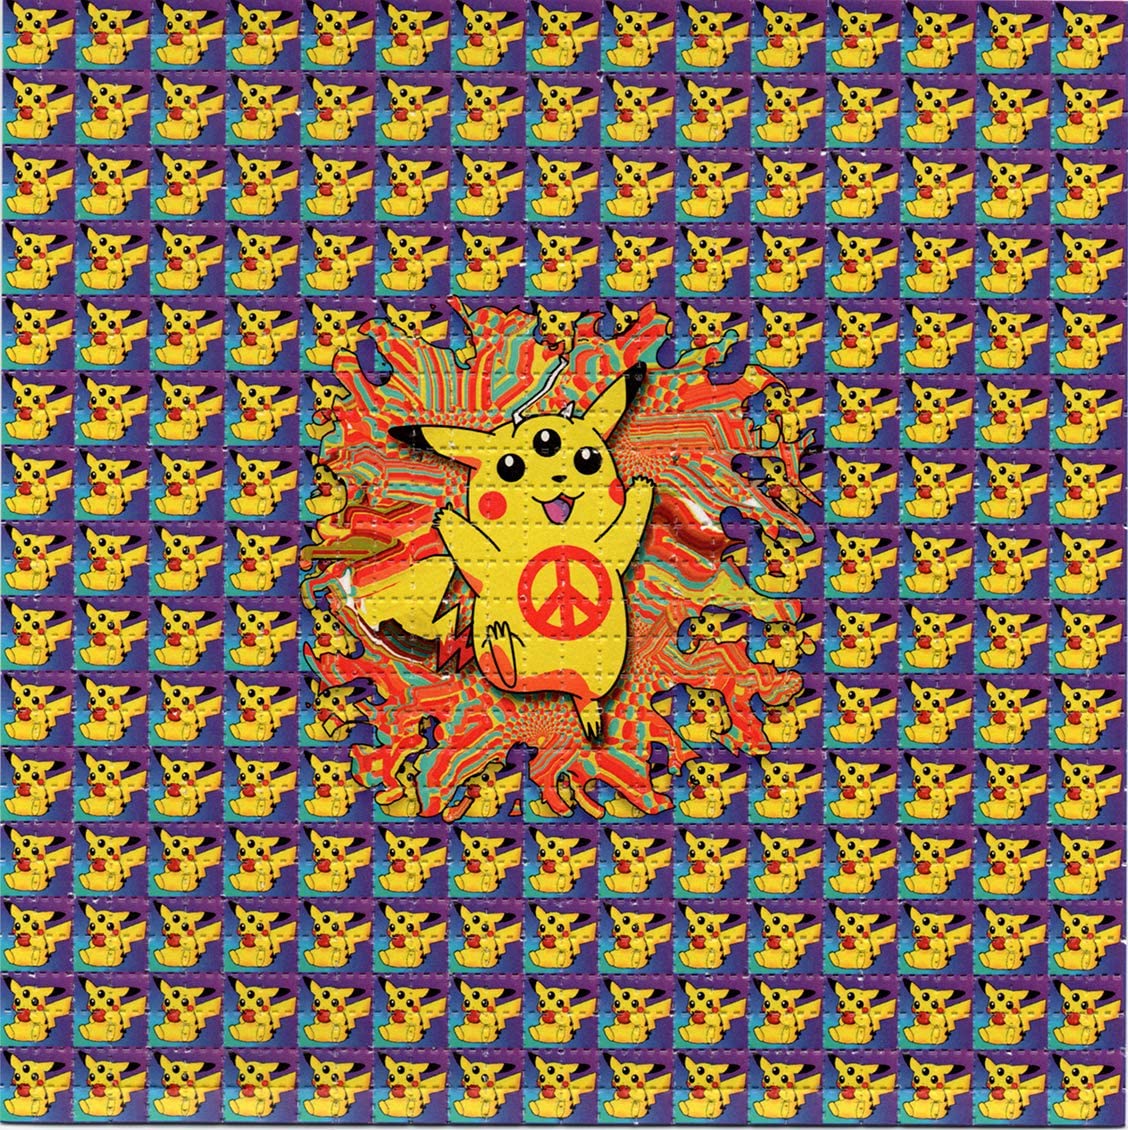 Zen 3-Eyed Pika LSD blotter art print